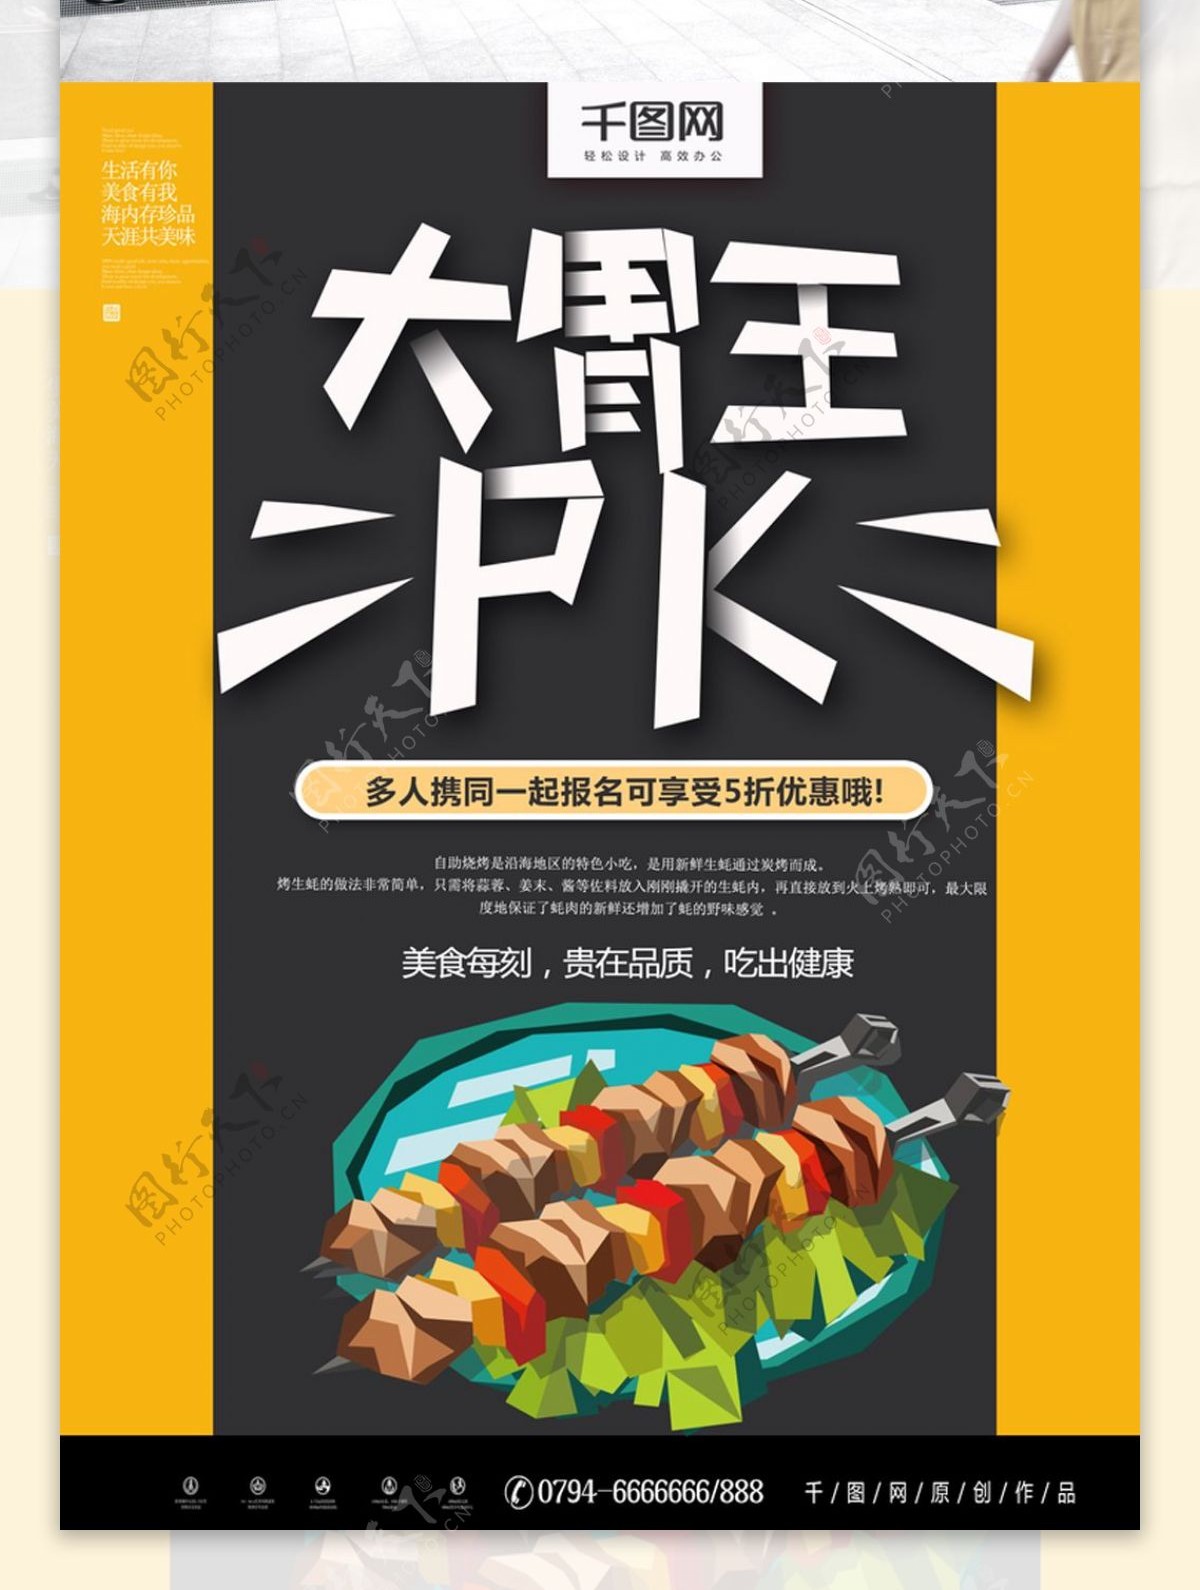 黄色手绘风大胃王PK烤肉海报